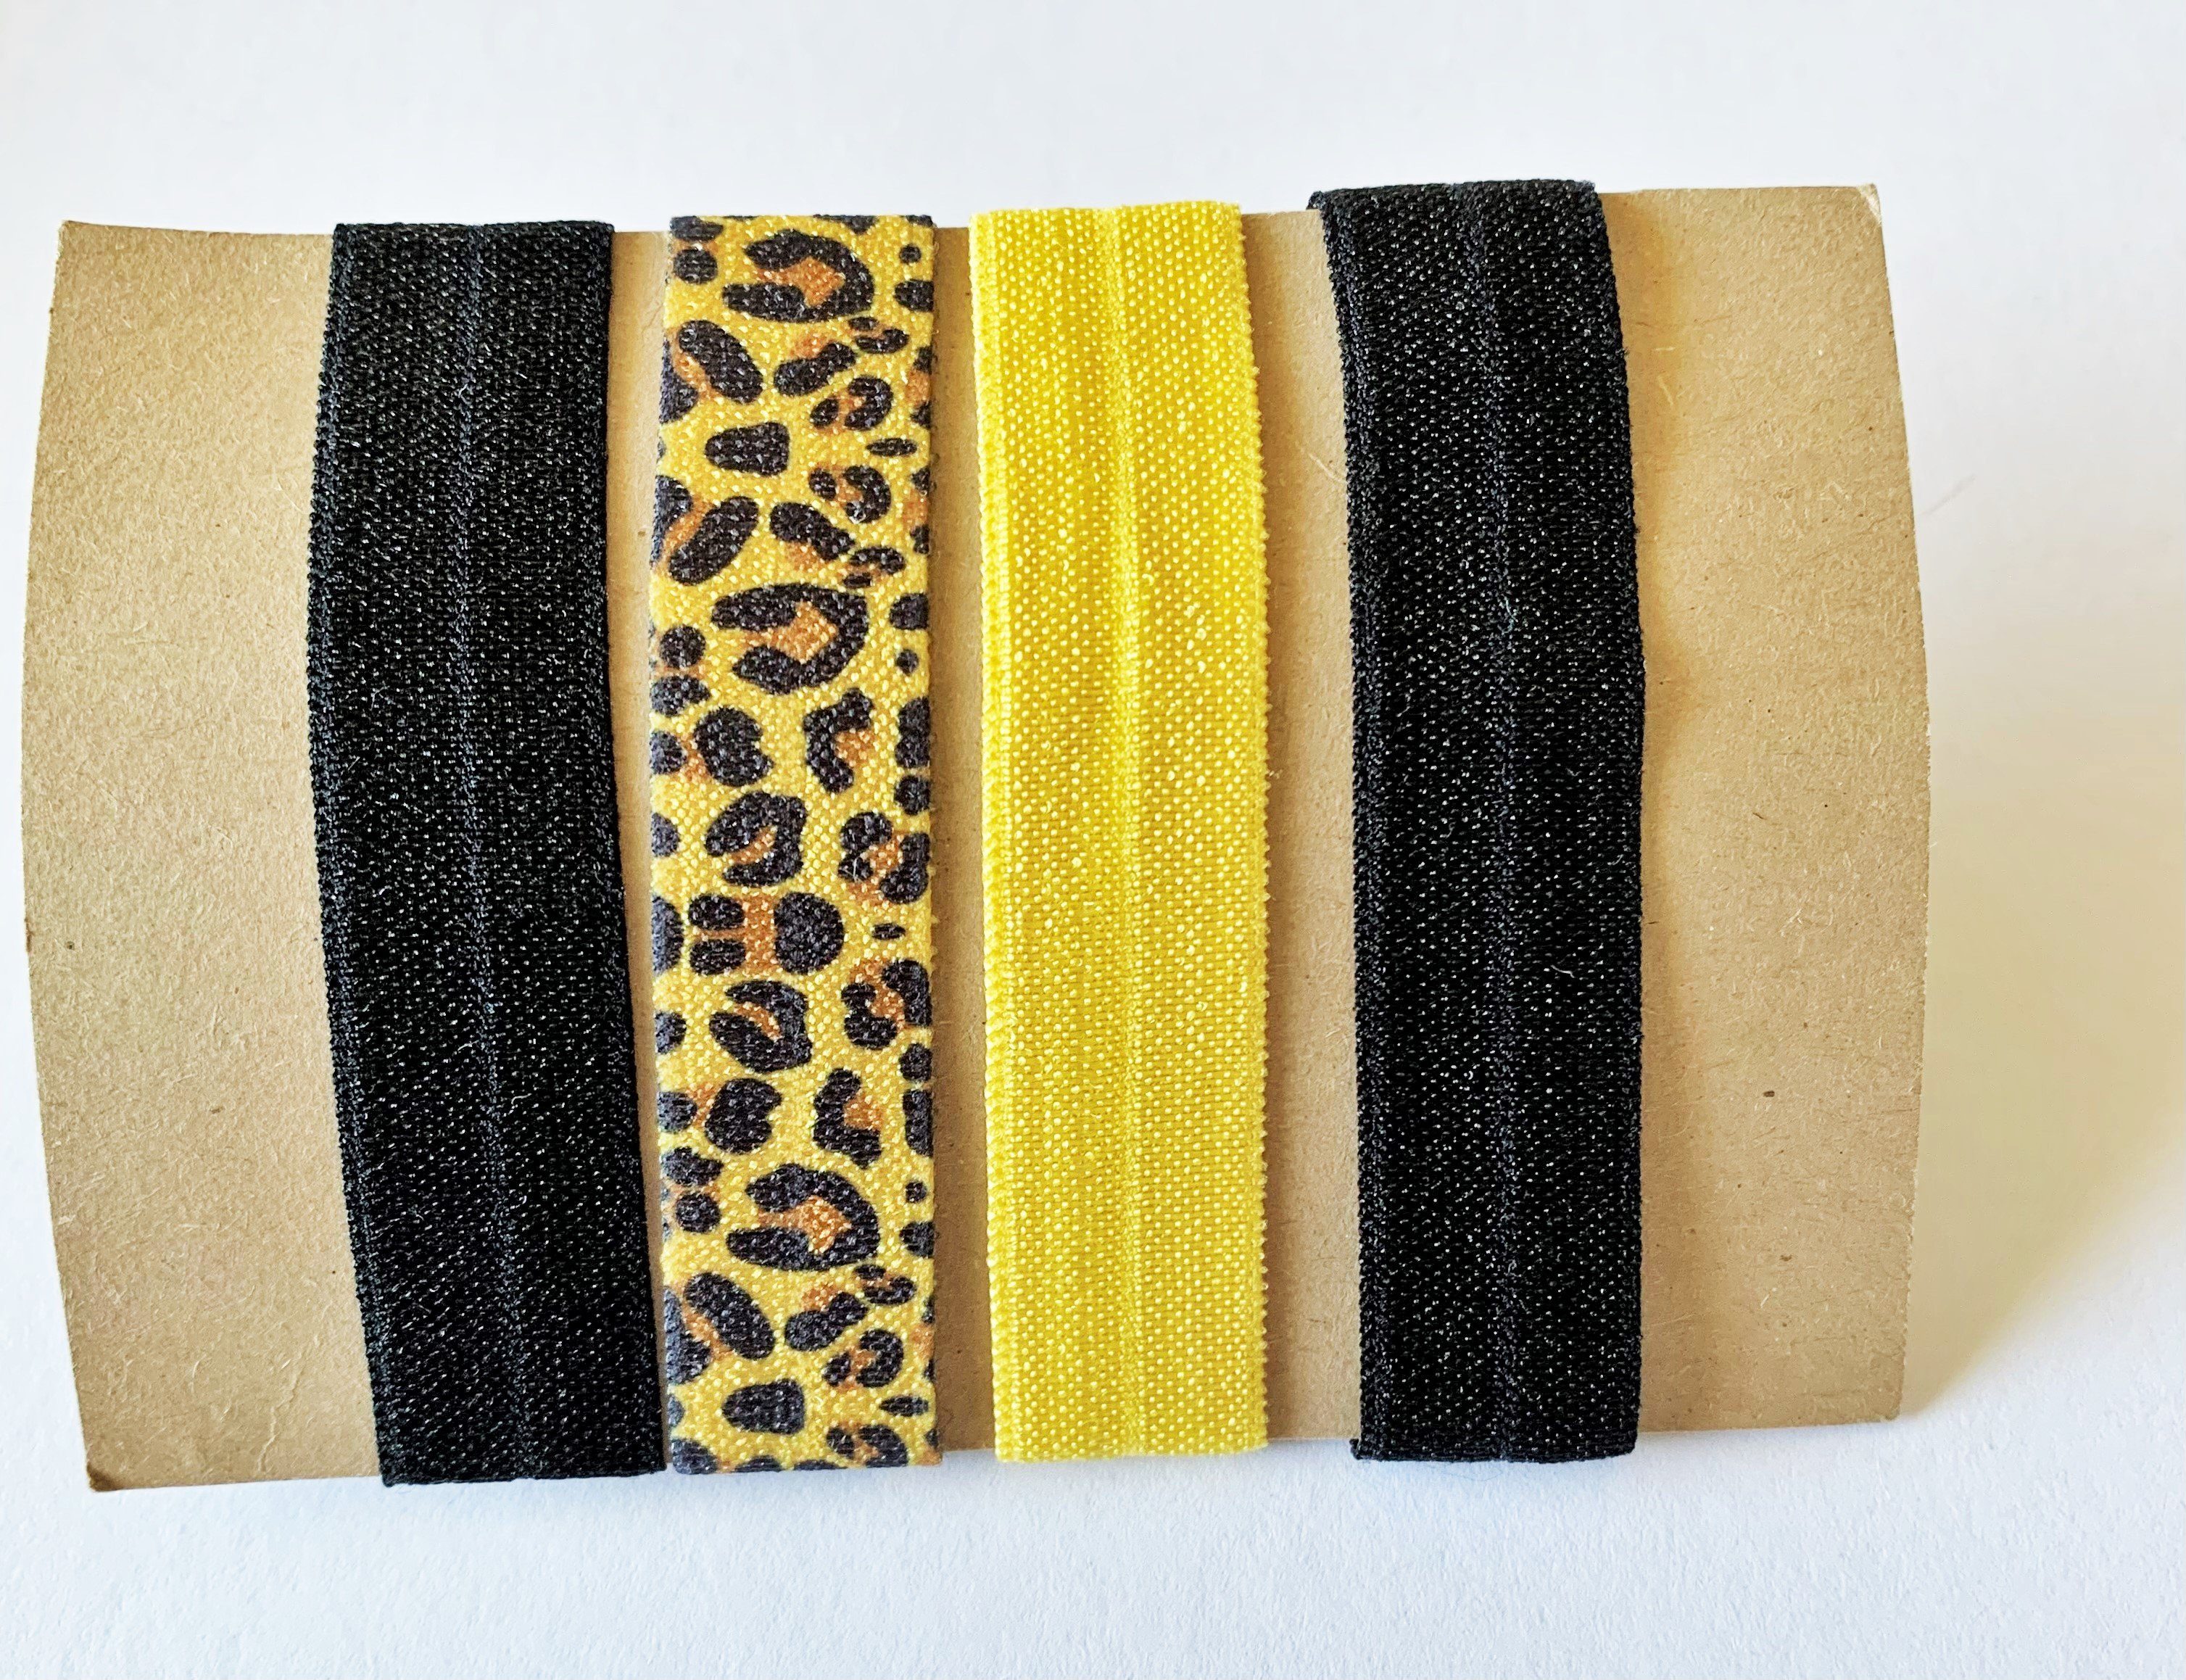 LK Trend & Style Zopfband elastisches Haarband oder Armband, für die Festival Frisur, cooles Armband, Das Haarband läßt sich perfekt als Armband tragen. Sehr angesagt! Leopard Gelb